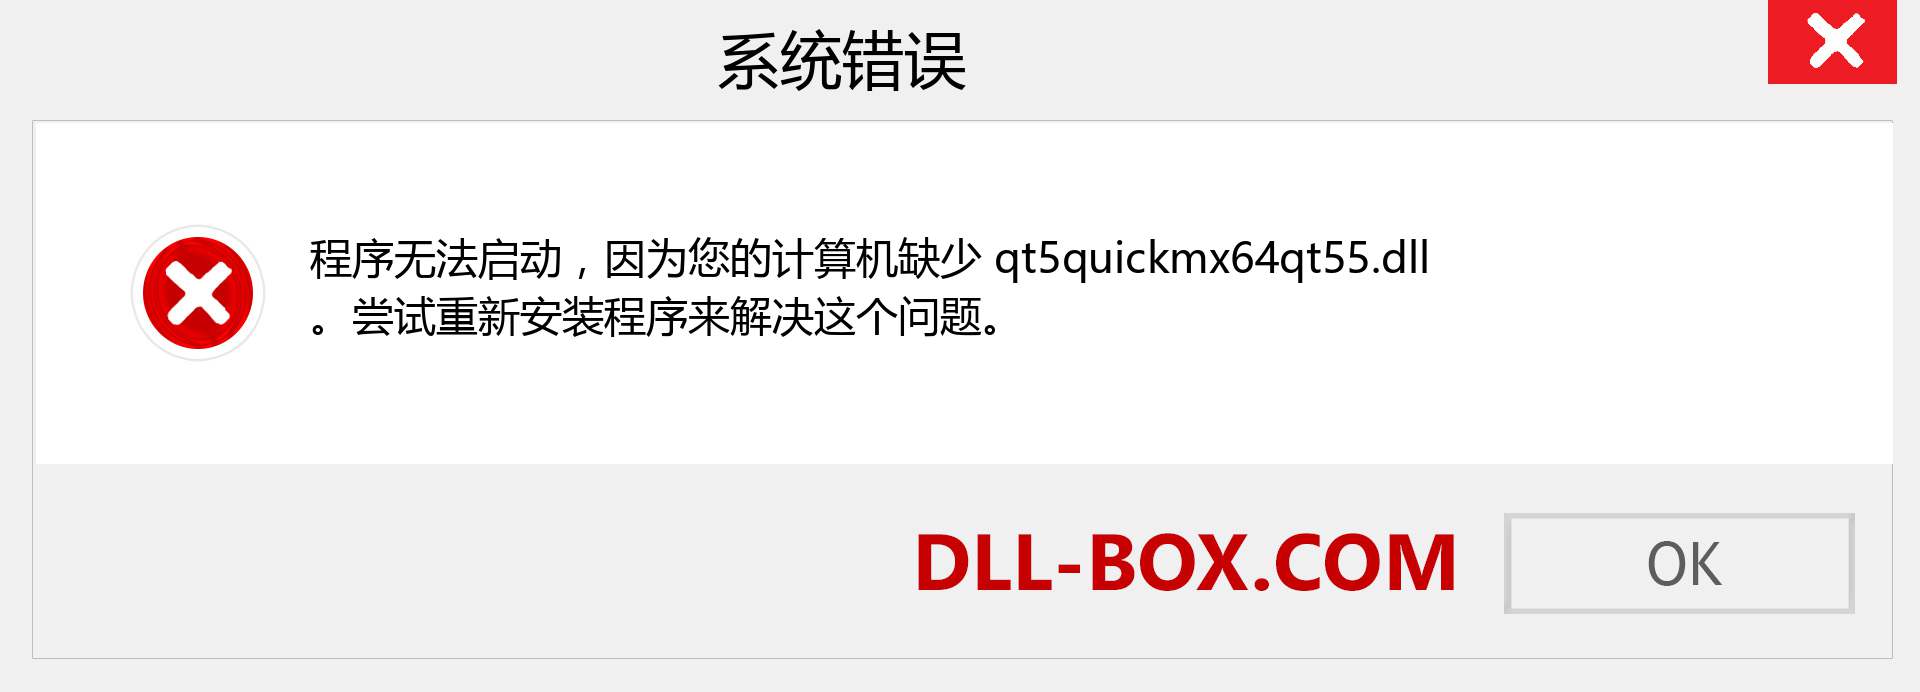 qt5quickmx64qt55.dll 文件丢失？。 适用于 Windows 7、8、10 的下载 - 修复 Windows、照片、图像上的 qt5quickmx64qt55 dll 丢失错误